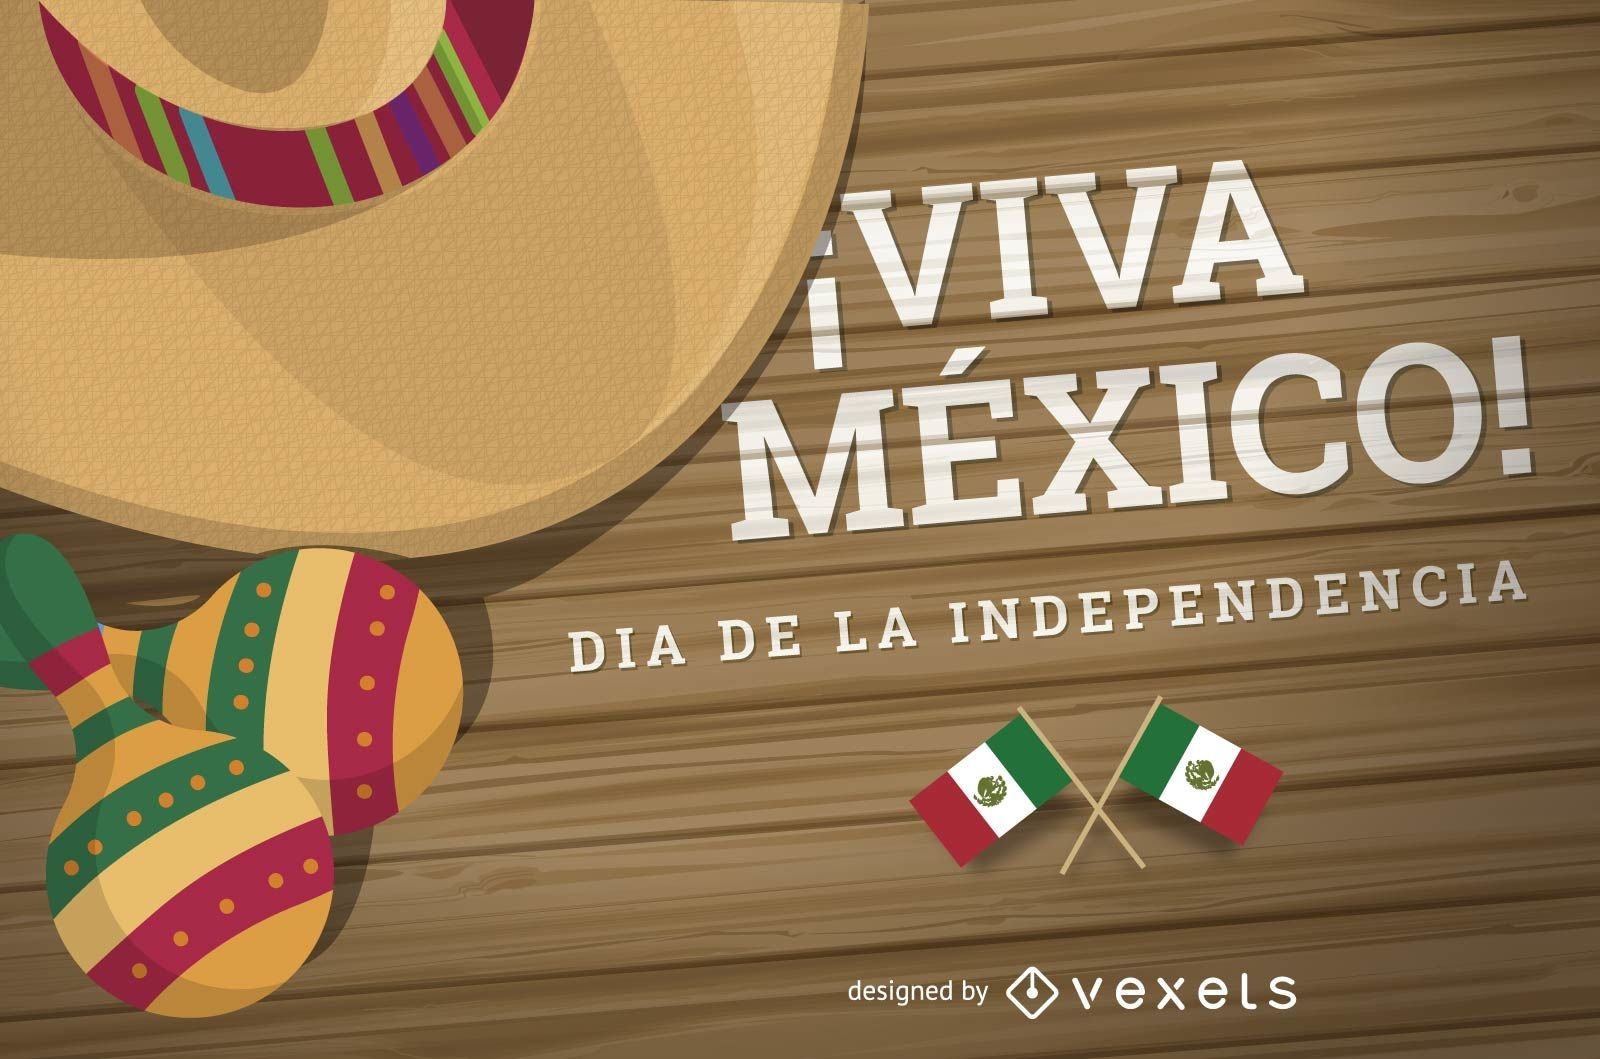 Dia de la Independencia Mexico design